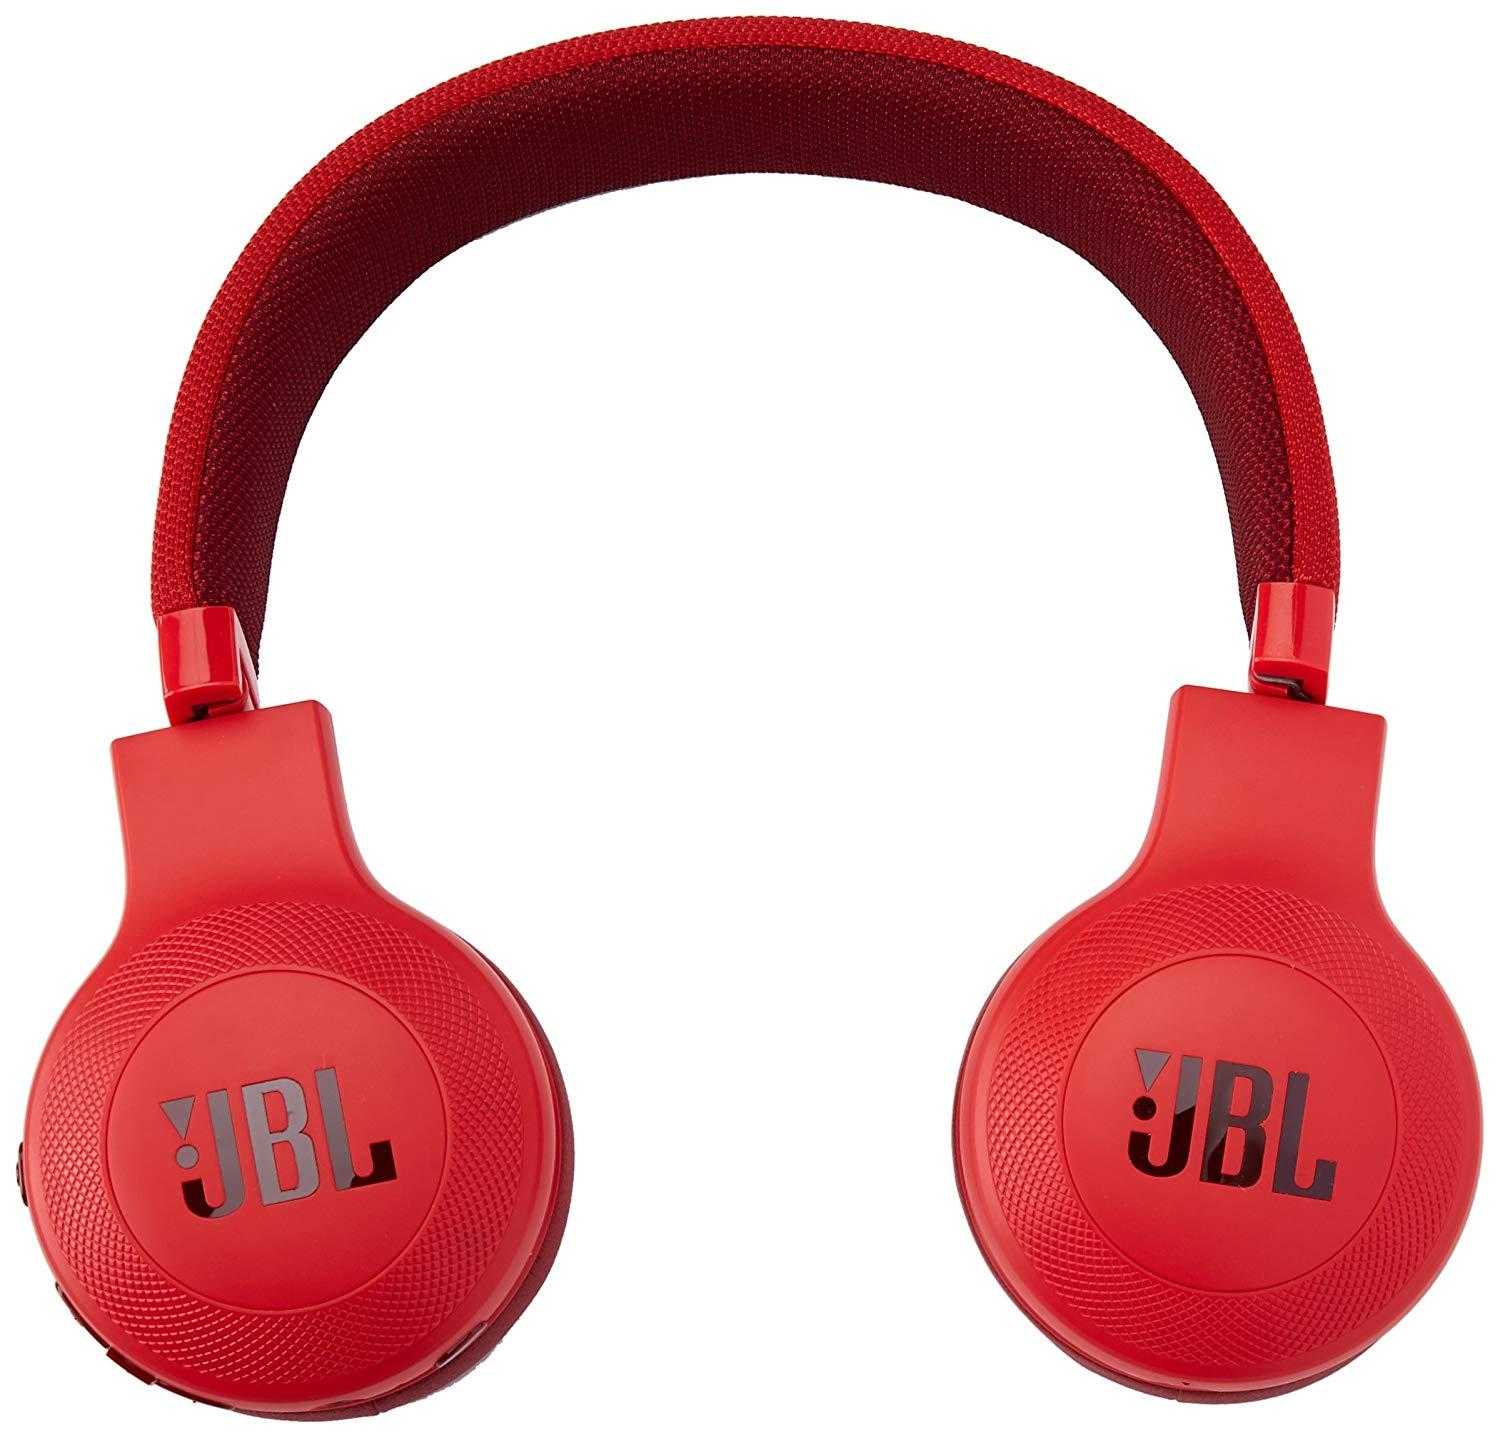 Jbl tempo earbud j02 (белый) - купить , скидки, цена, отзывы, обзор, характеристики - bluetooth гарнитуры и наушники